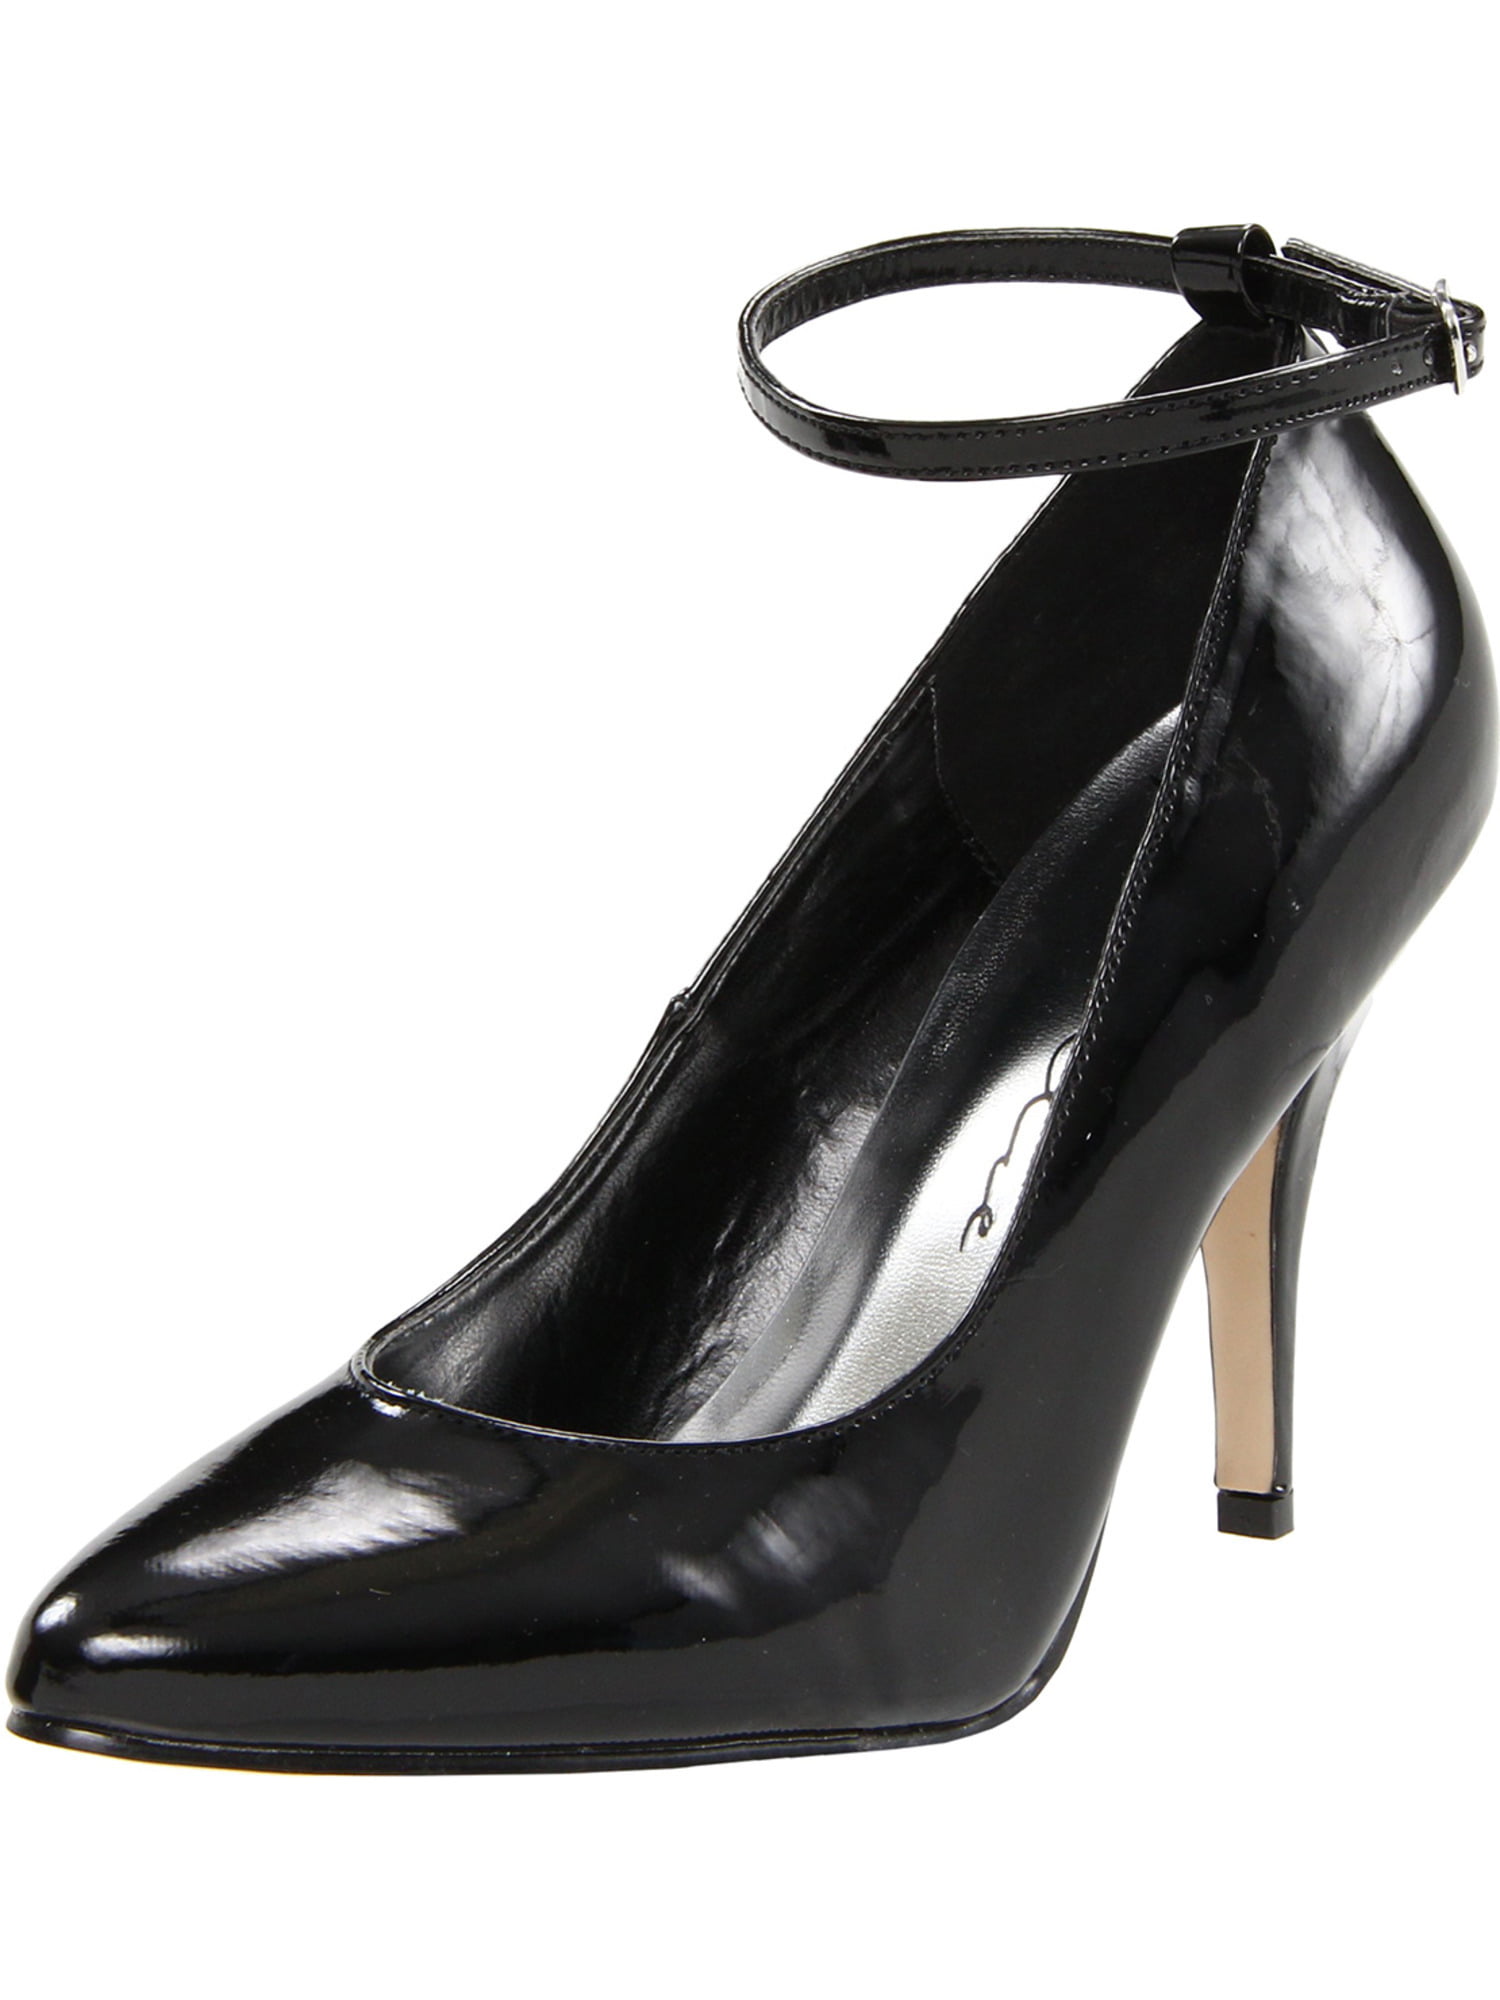 walmart heels black